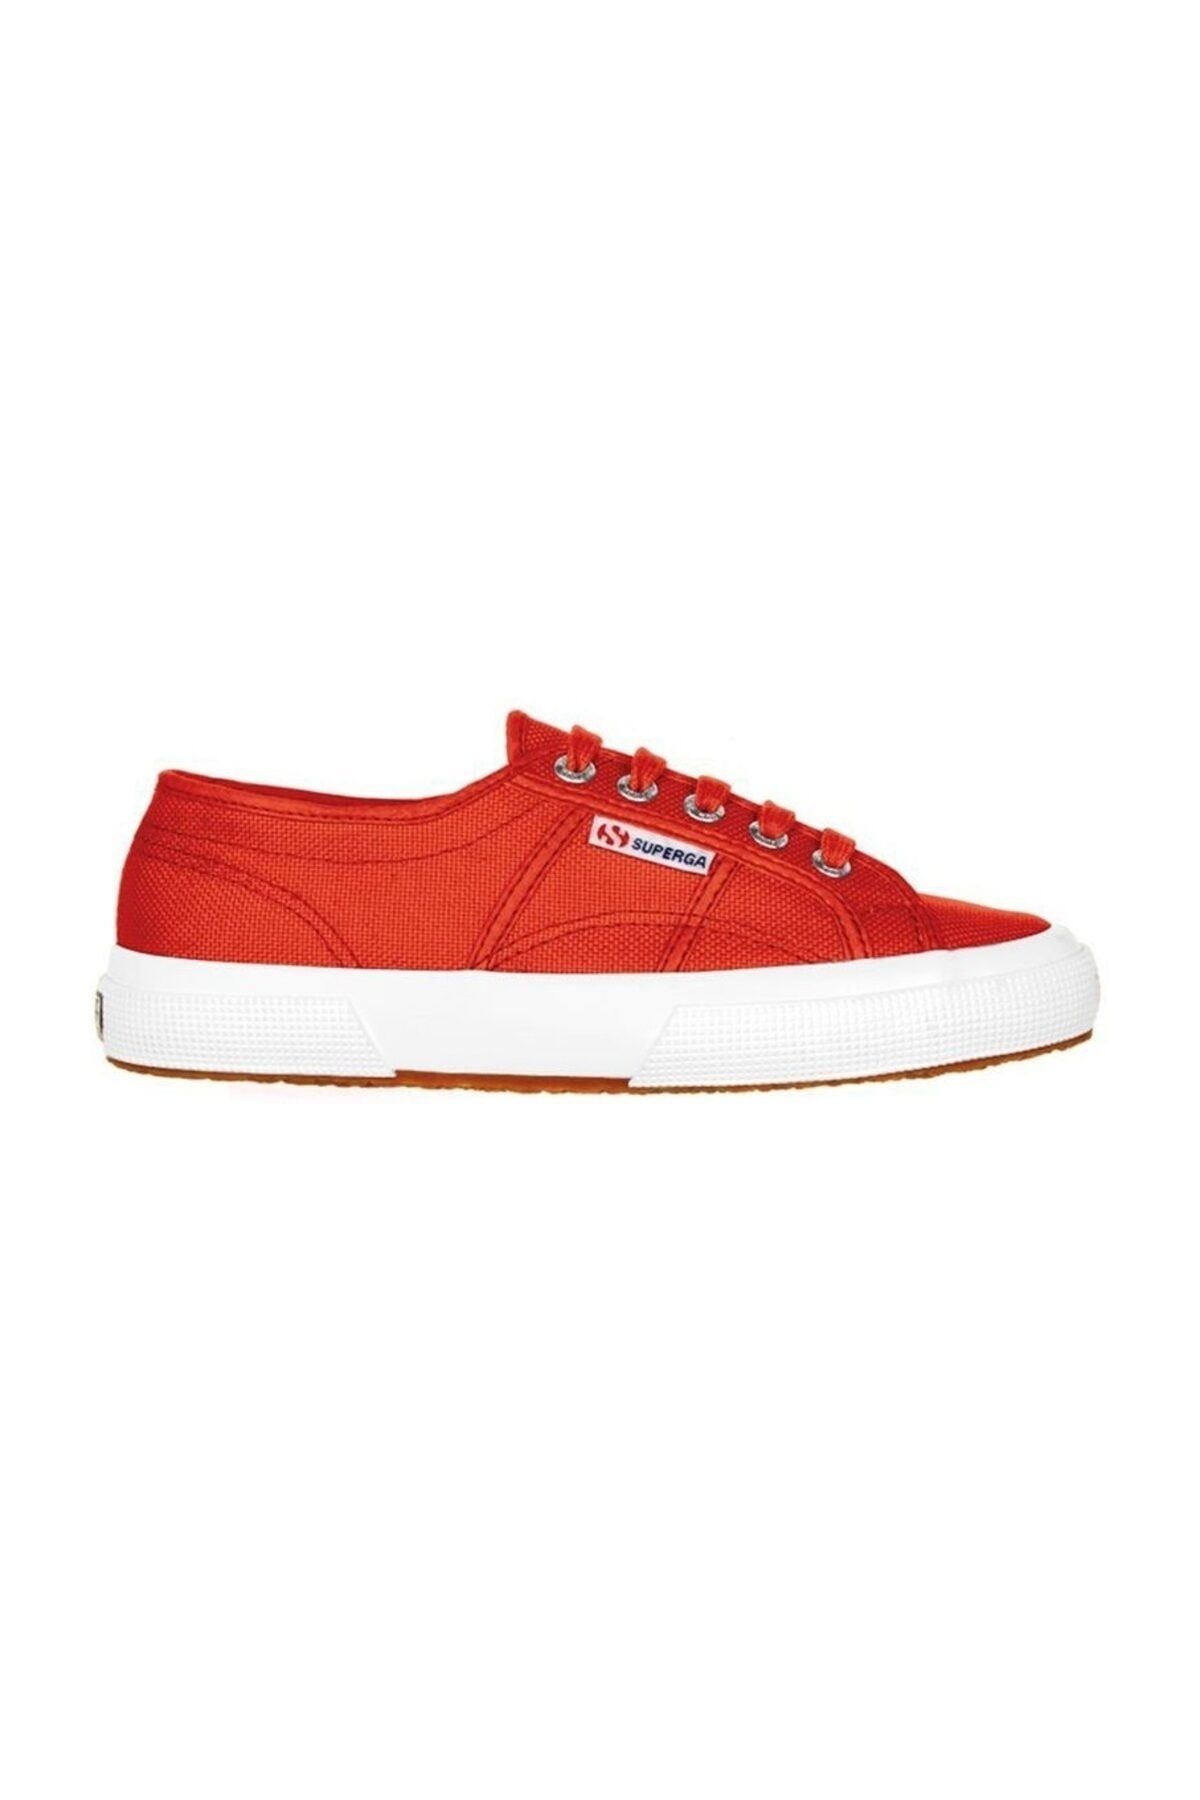 Superga Unisex Kırmızı Spor Ayakkabı -  2750-Cotu Classic - S000010 - C90